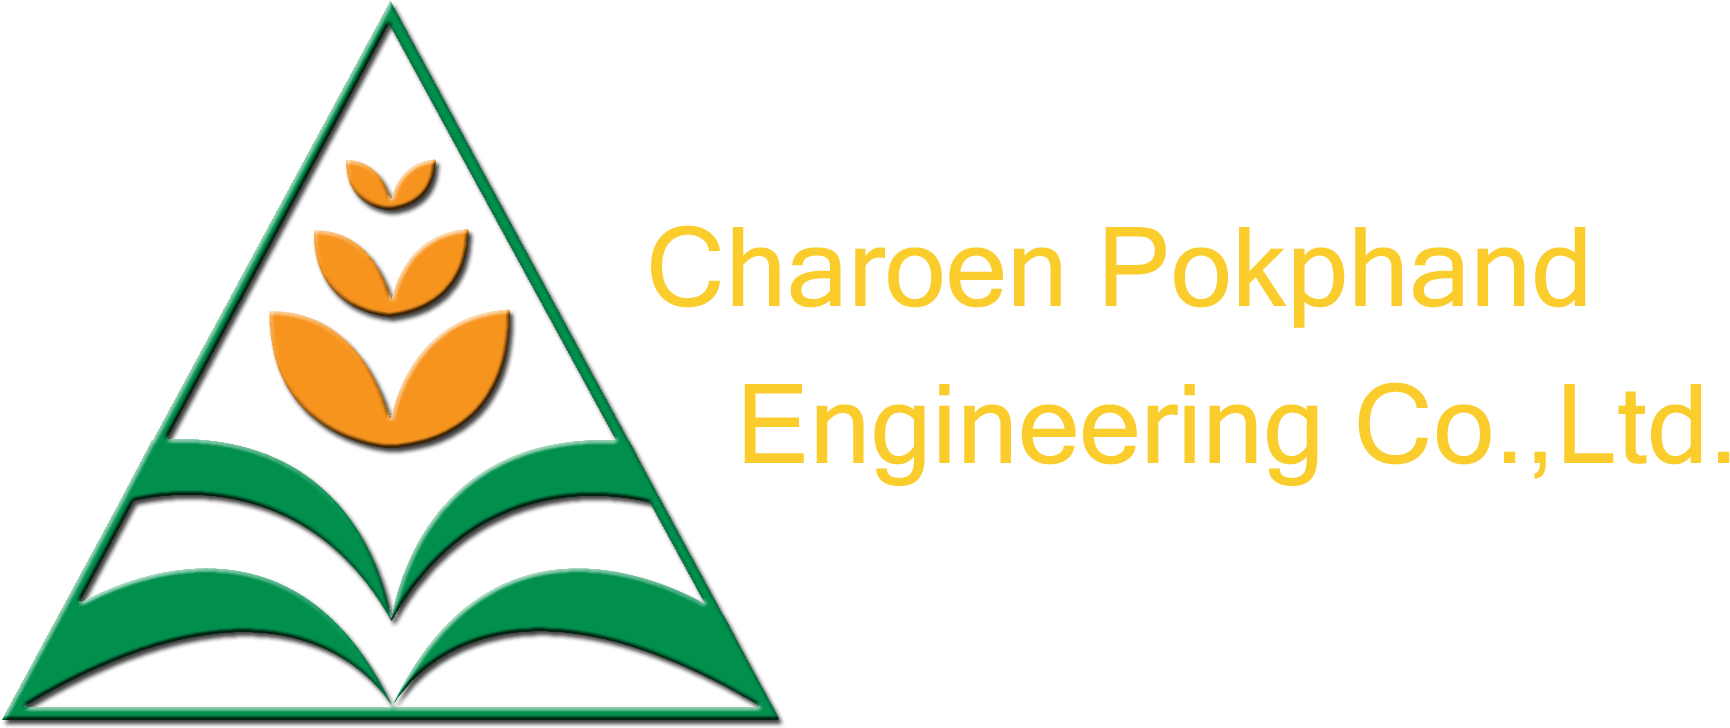 Charoen Pokphand Engineering Charoen Pokphand Engineering - Charoen Pokphand Engineering Co Ltd Clipart (2000x768), Png Download